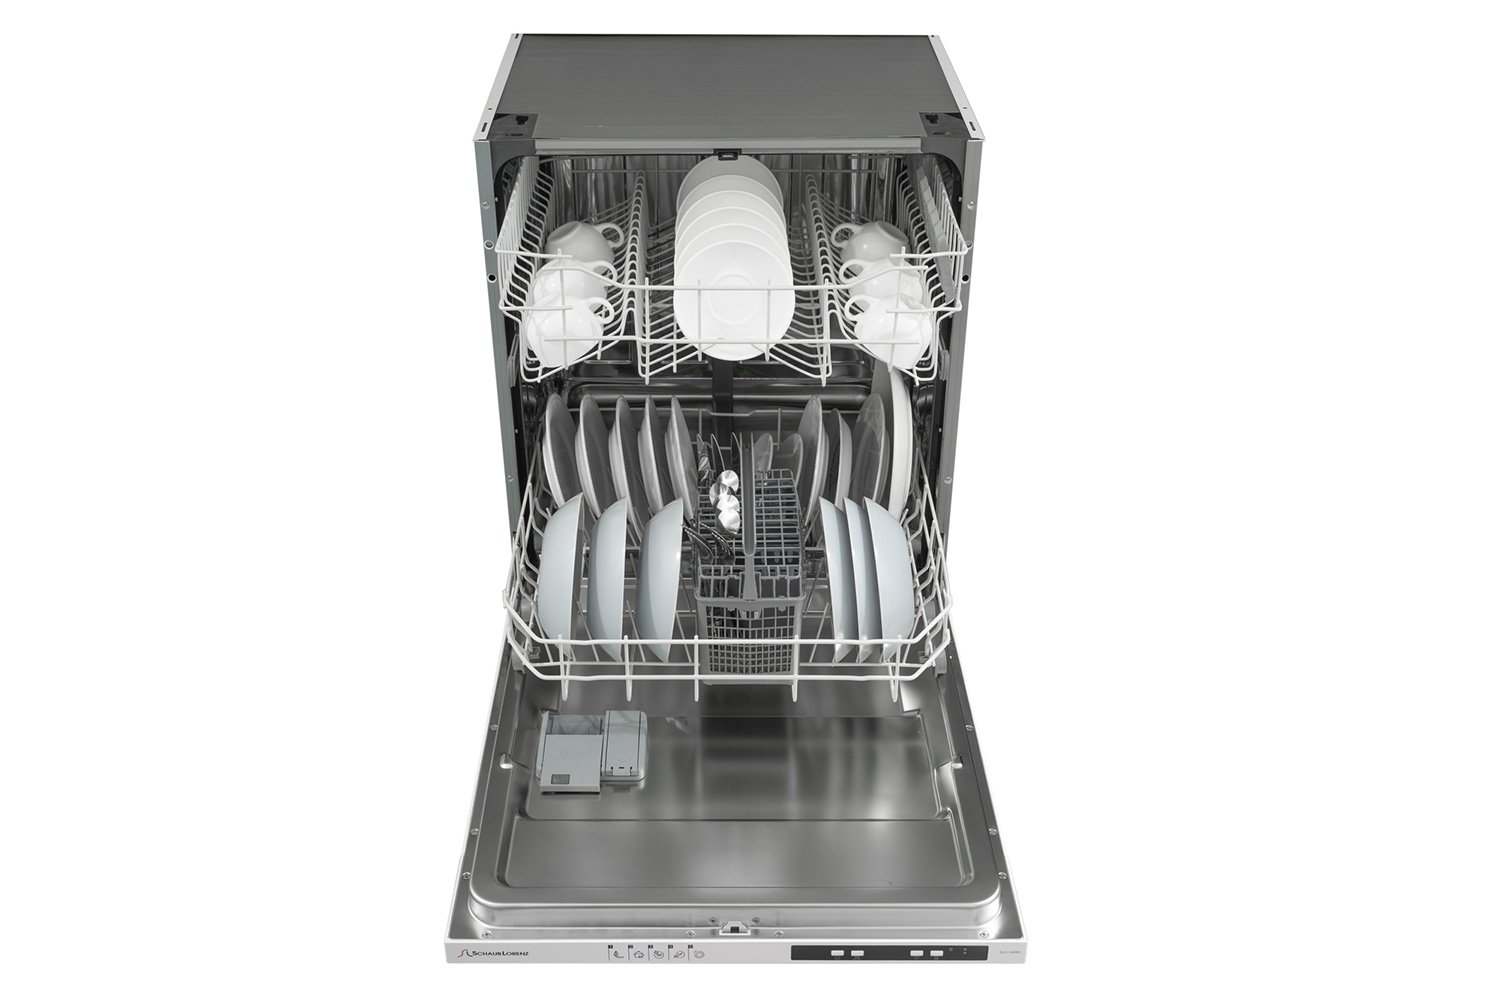 Посудомоечная машина SLG VI6110